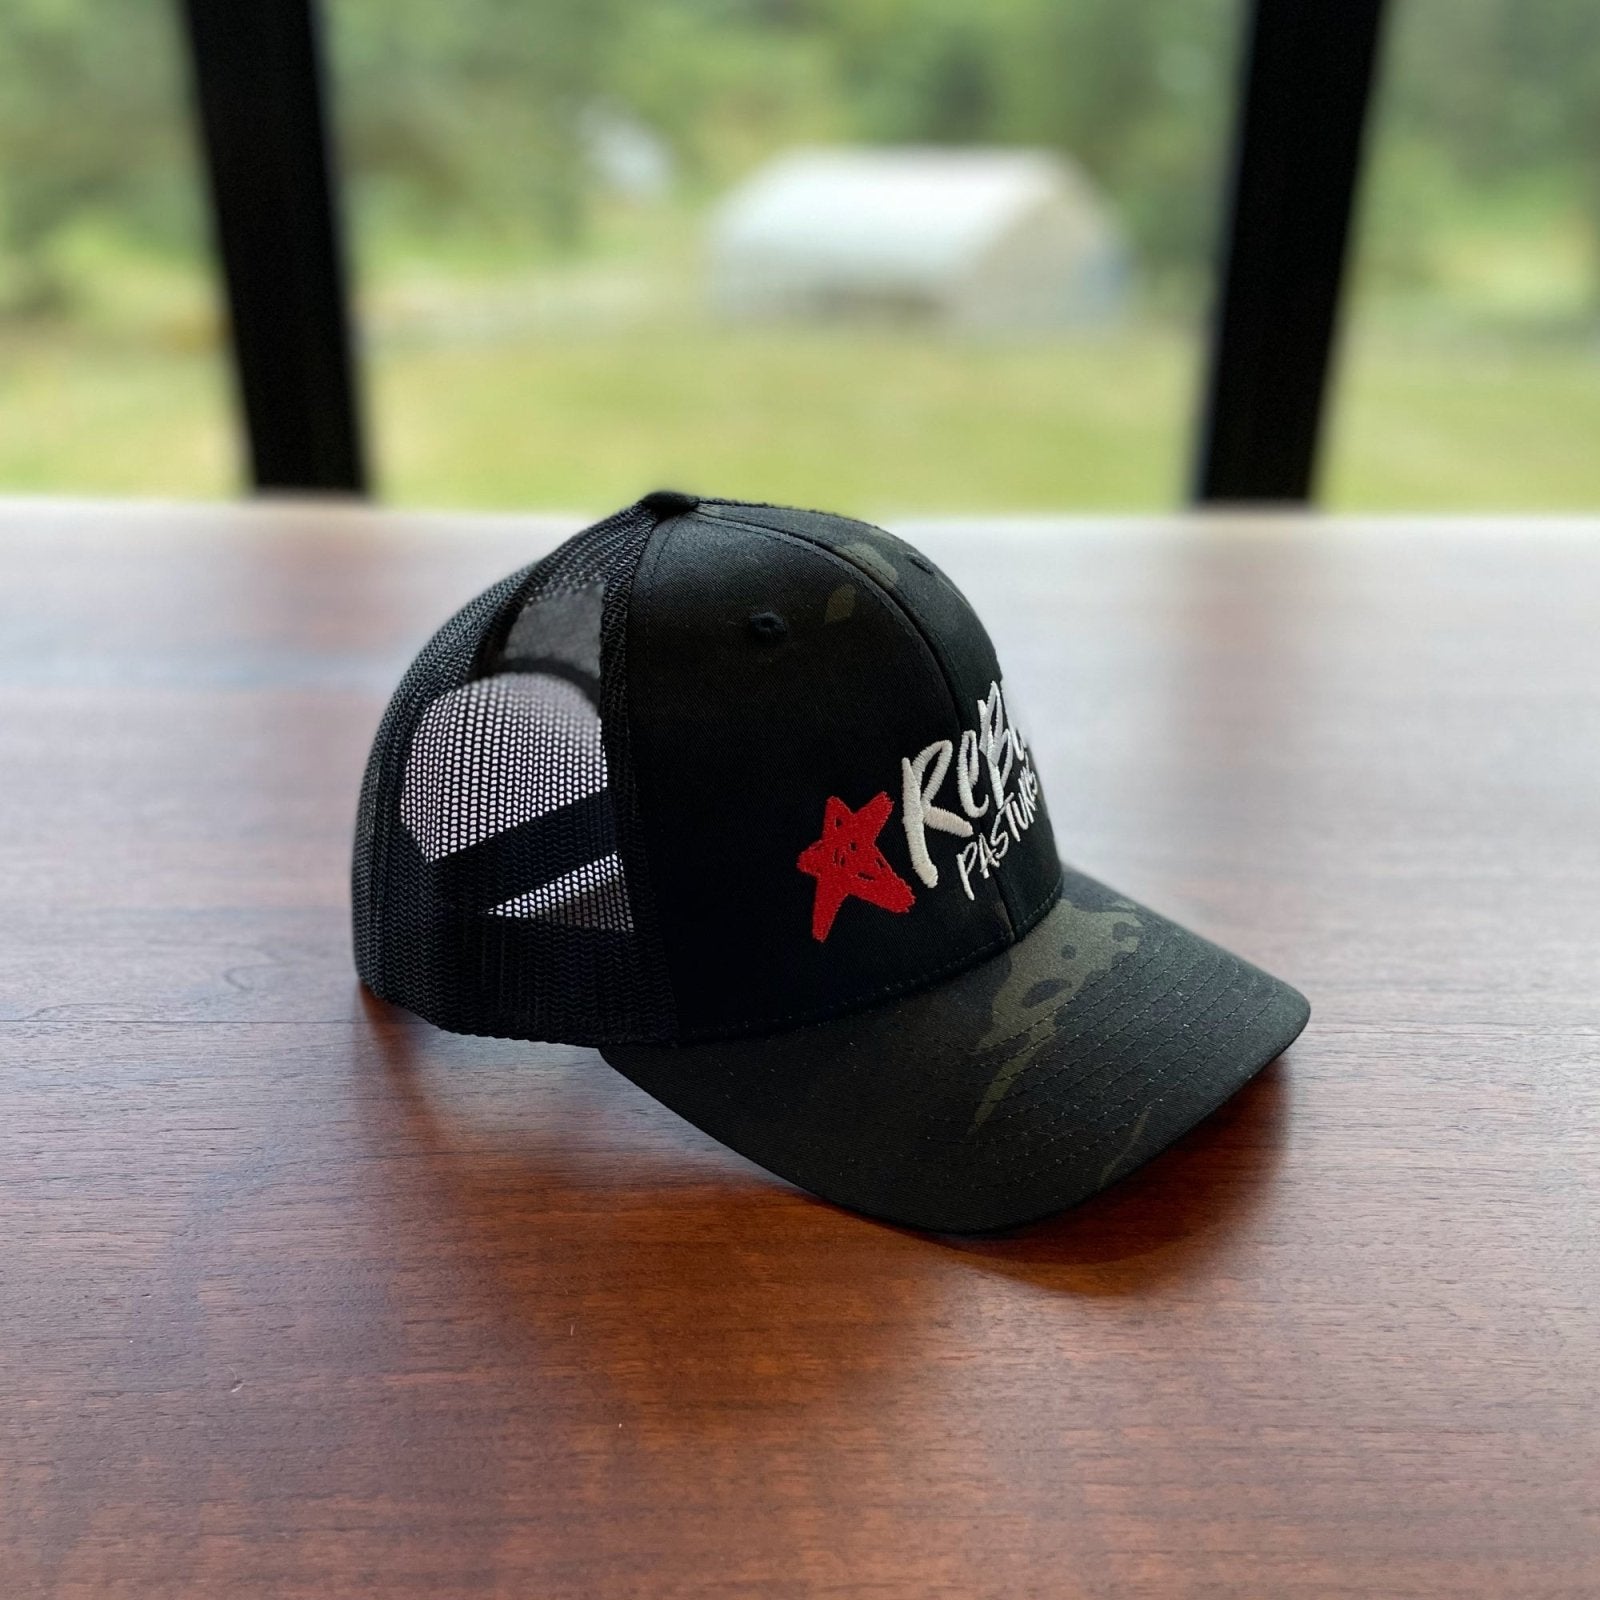 Rebel Black Camo Trucker Hat - Rebel Pastures